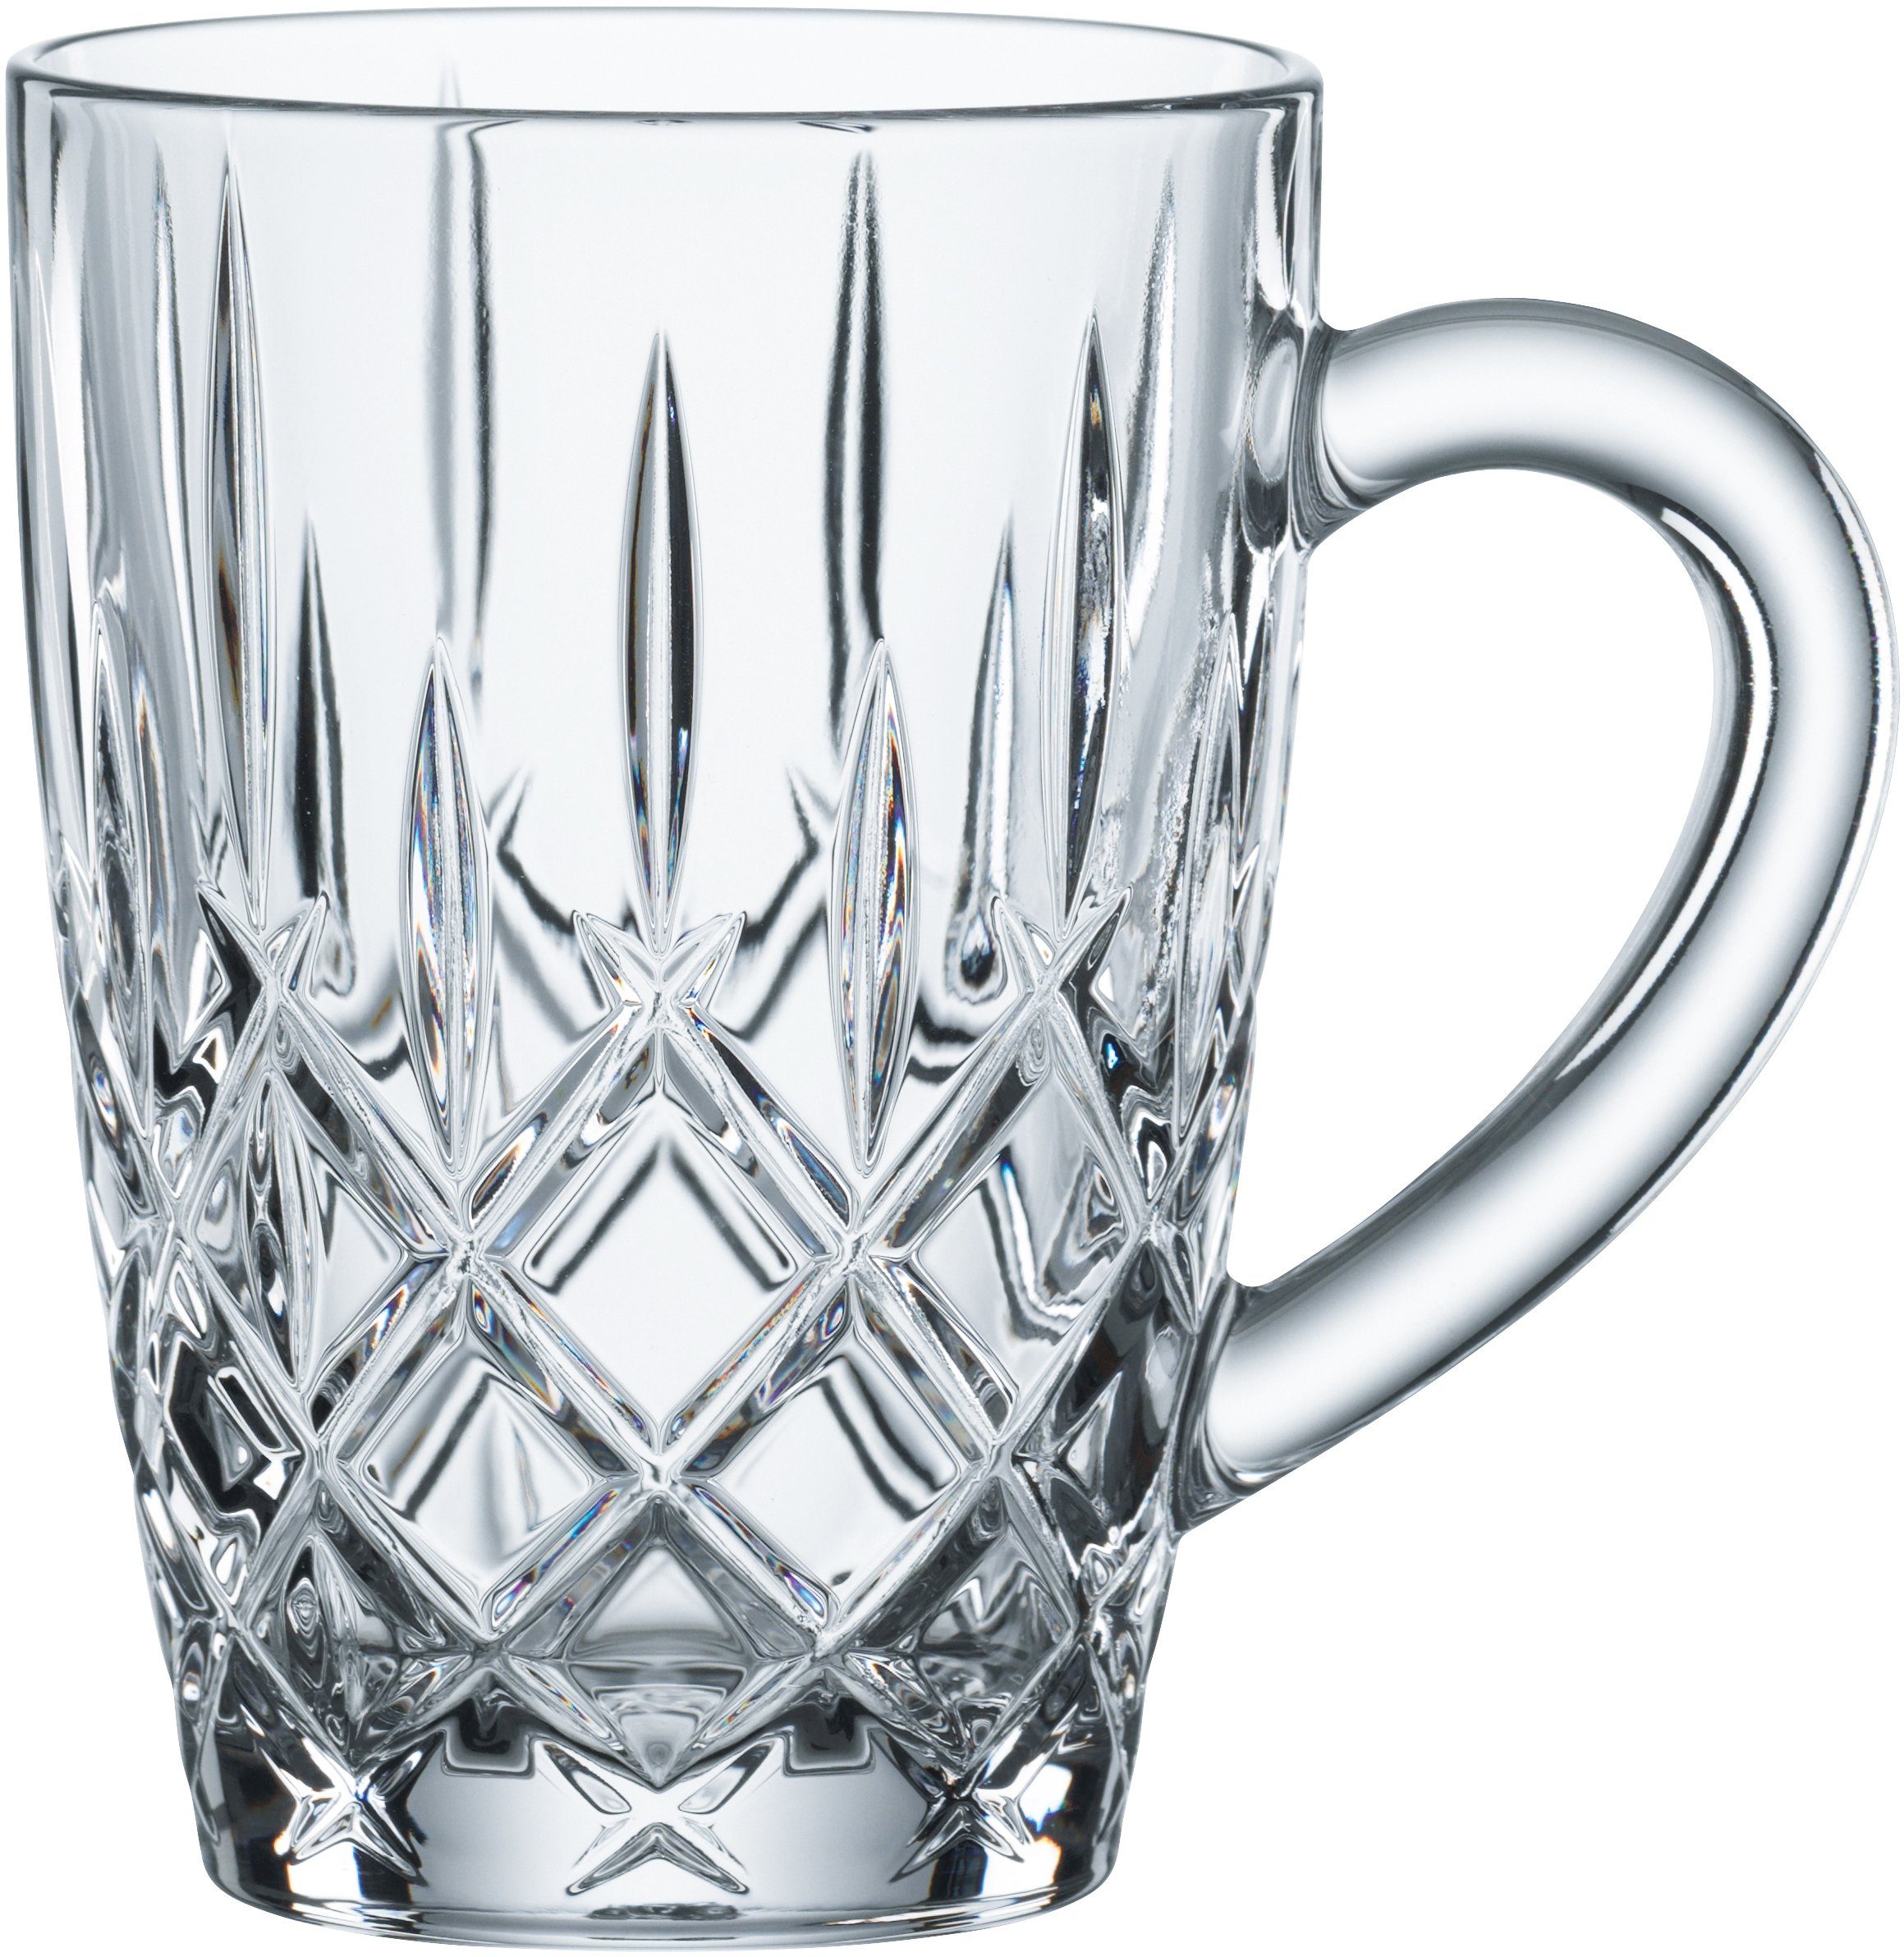 Nachtmann Teeglas Noblesse, Kristallglas, mit Schliff, 347 ml, 2-teilig, Made in Germany